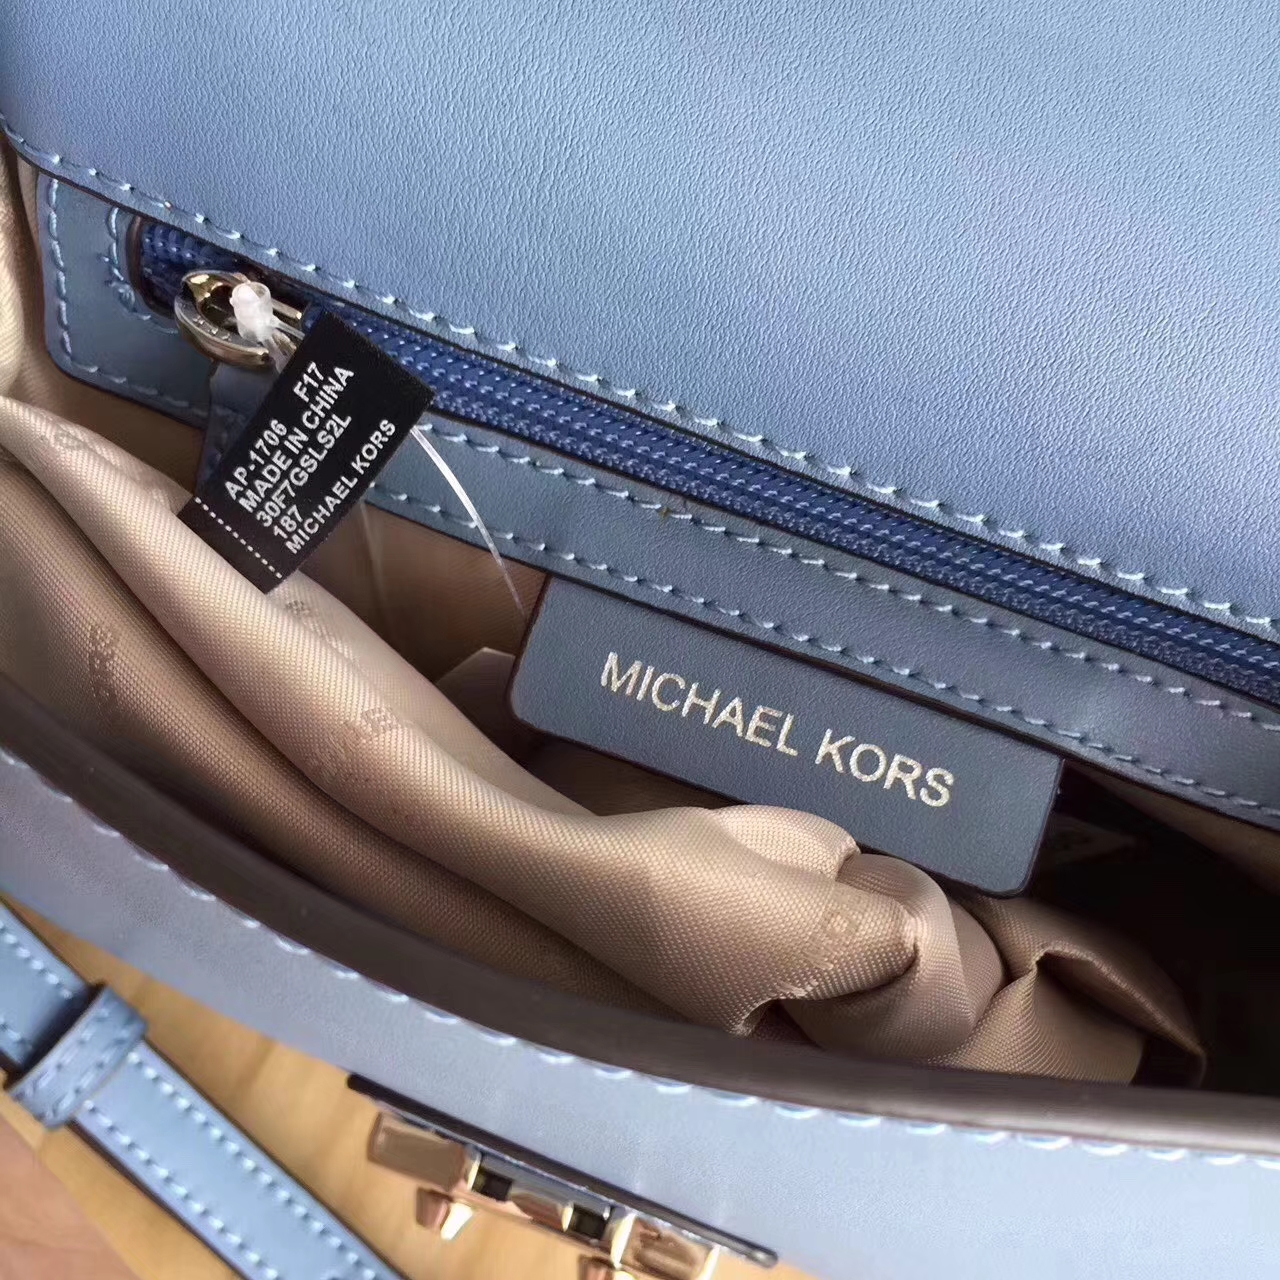 MK2017年新款女包 迈克科尔斯车菊蓝色纳帕牛皮手提包链条单肩包24cm